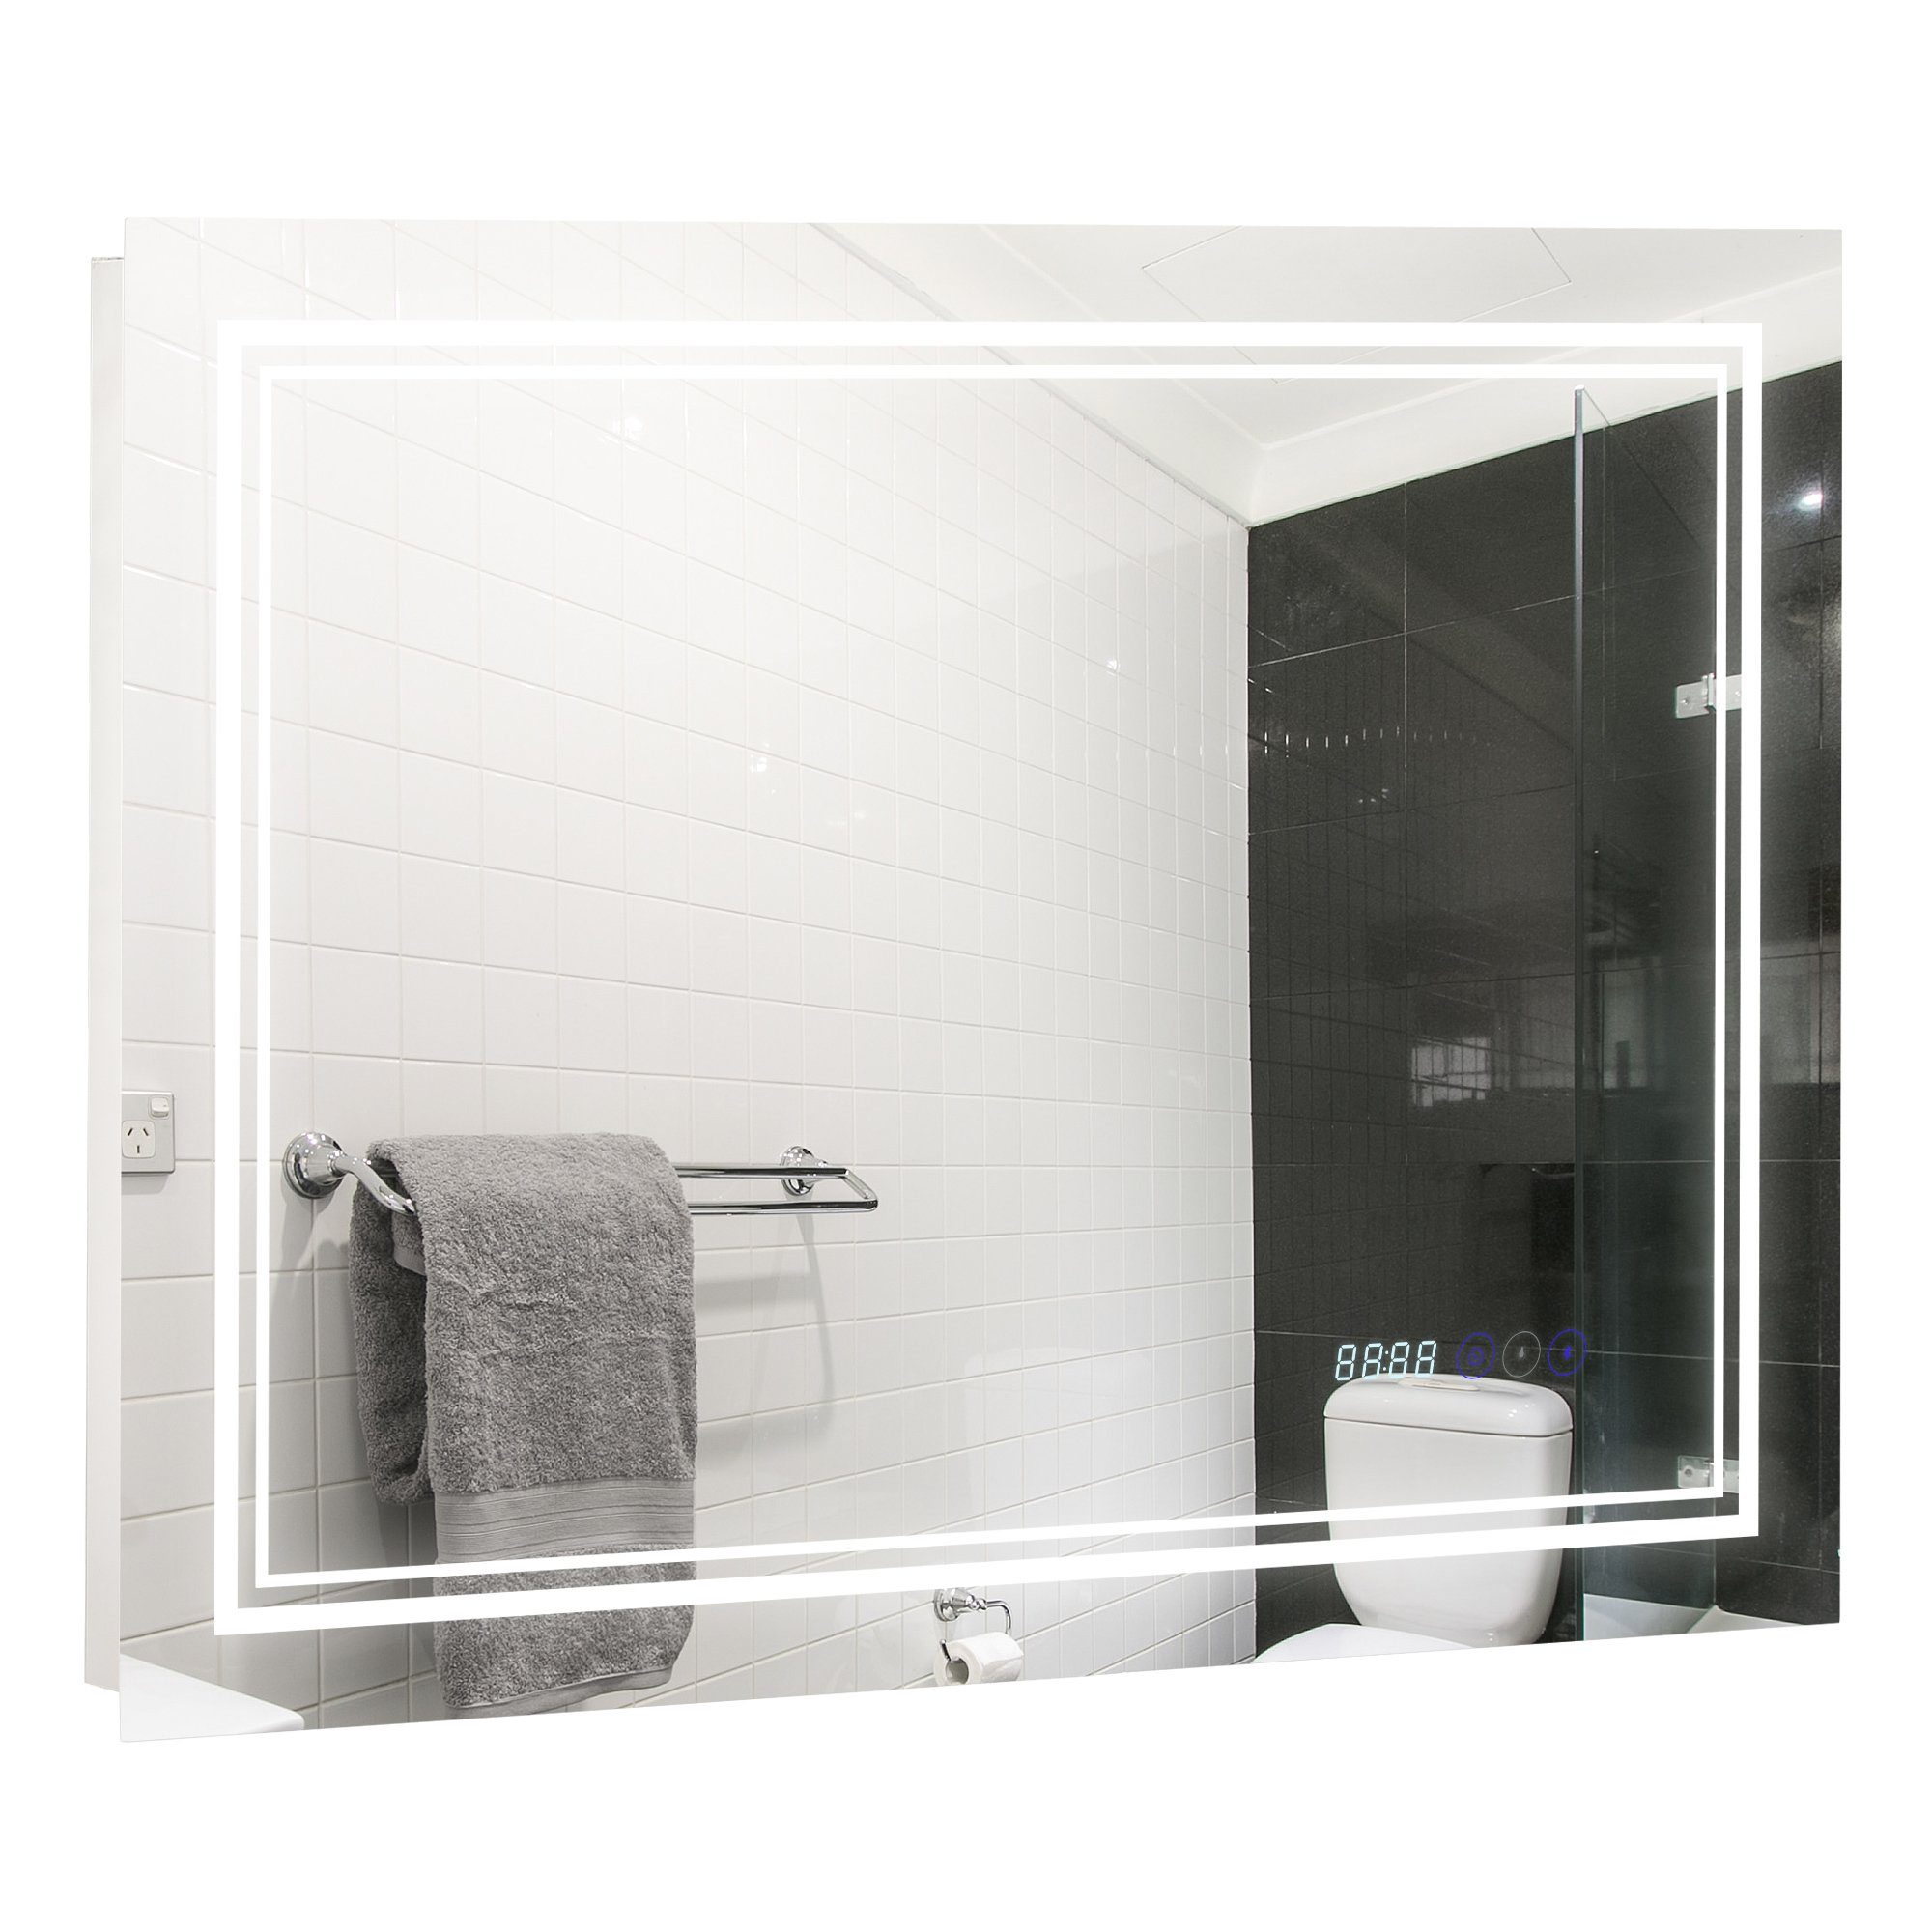 kleankin Spiegelschrank Wandschrank mit 3 Wohnen & Einrichten Wohnaccessoires Spiegel Badspiegel 